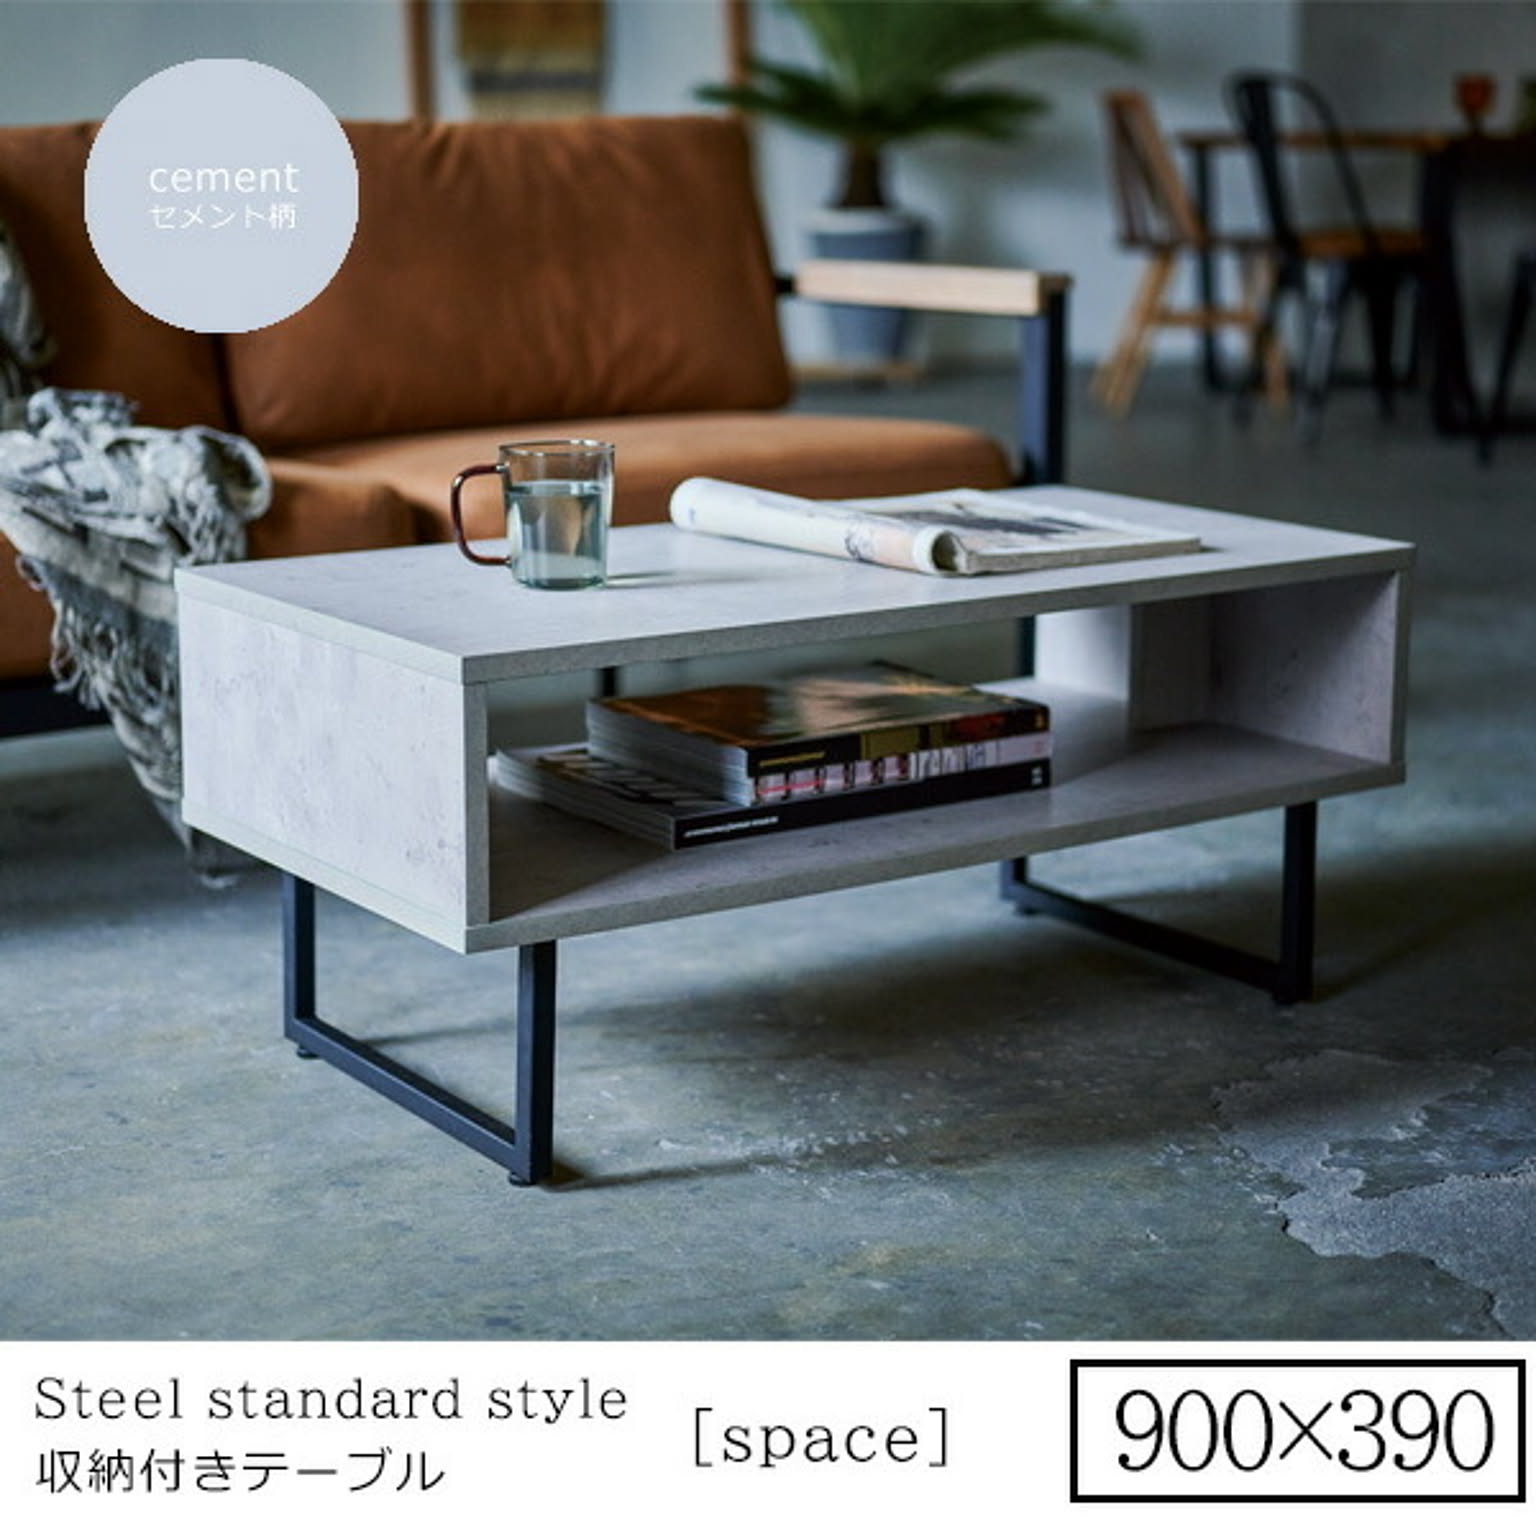 900x390 ： シンプル収納リビングテーブル 【space】セメント柄  (アーバン) センターテーブル コーヒーテーブル リビング 